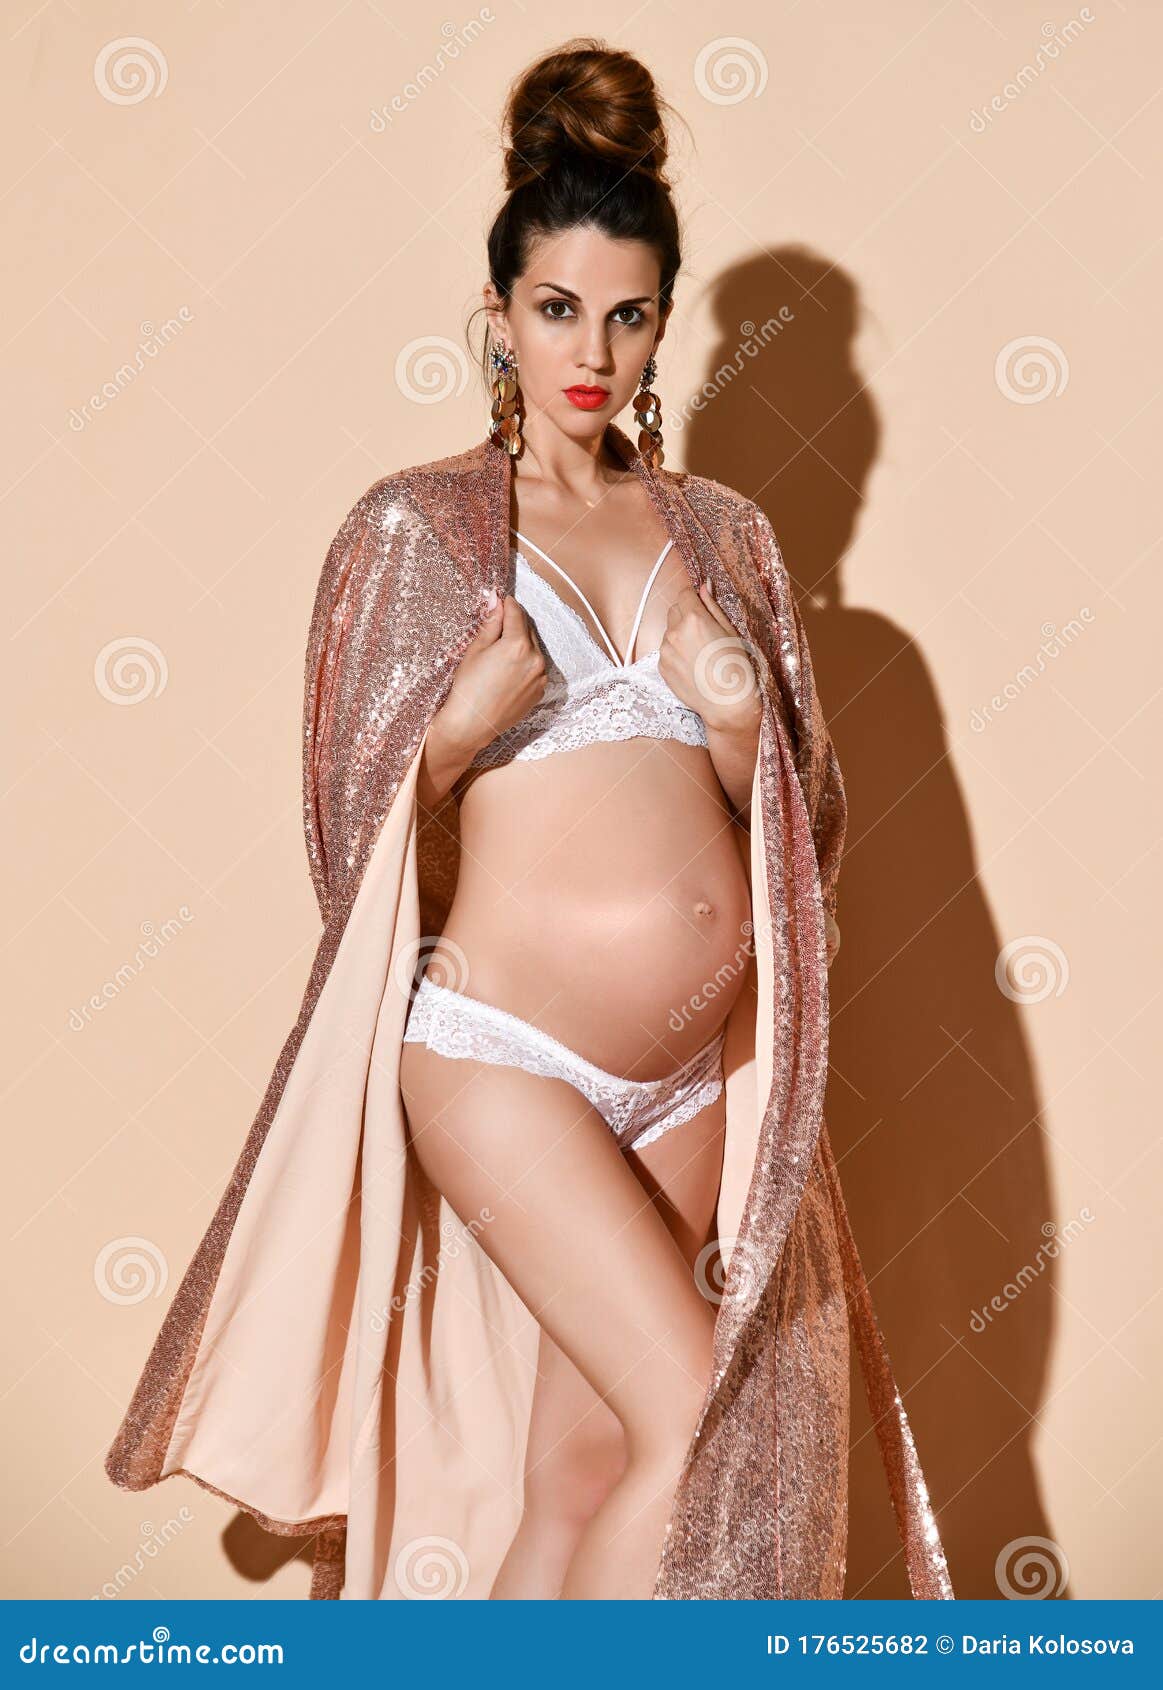 Hot Pregnant Models